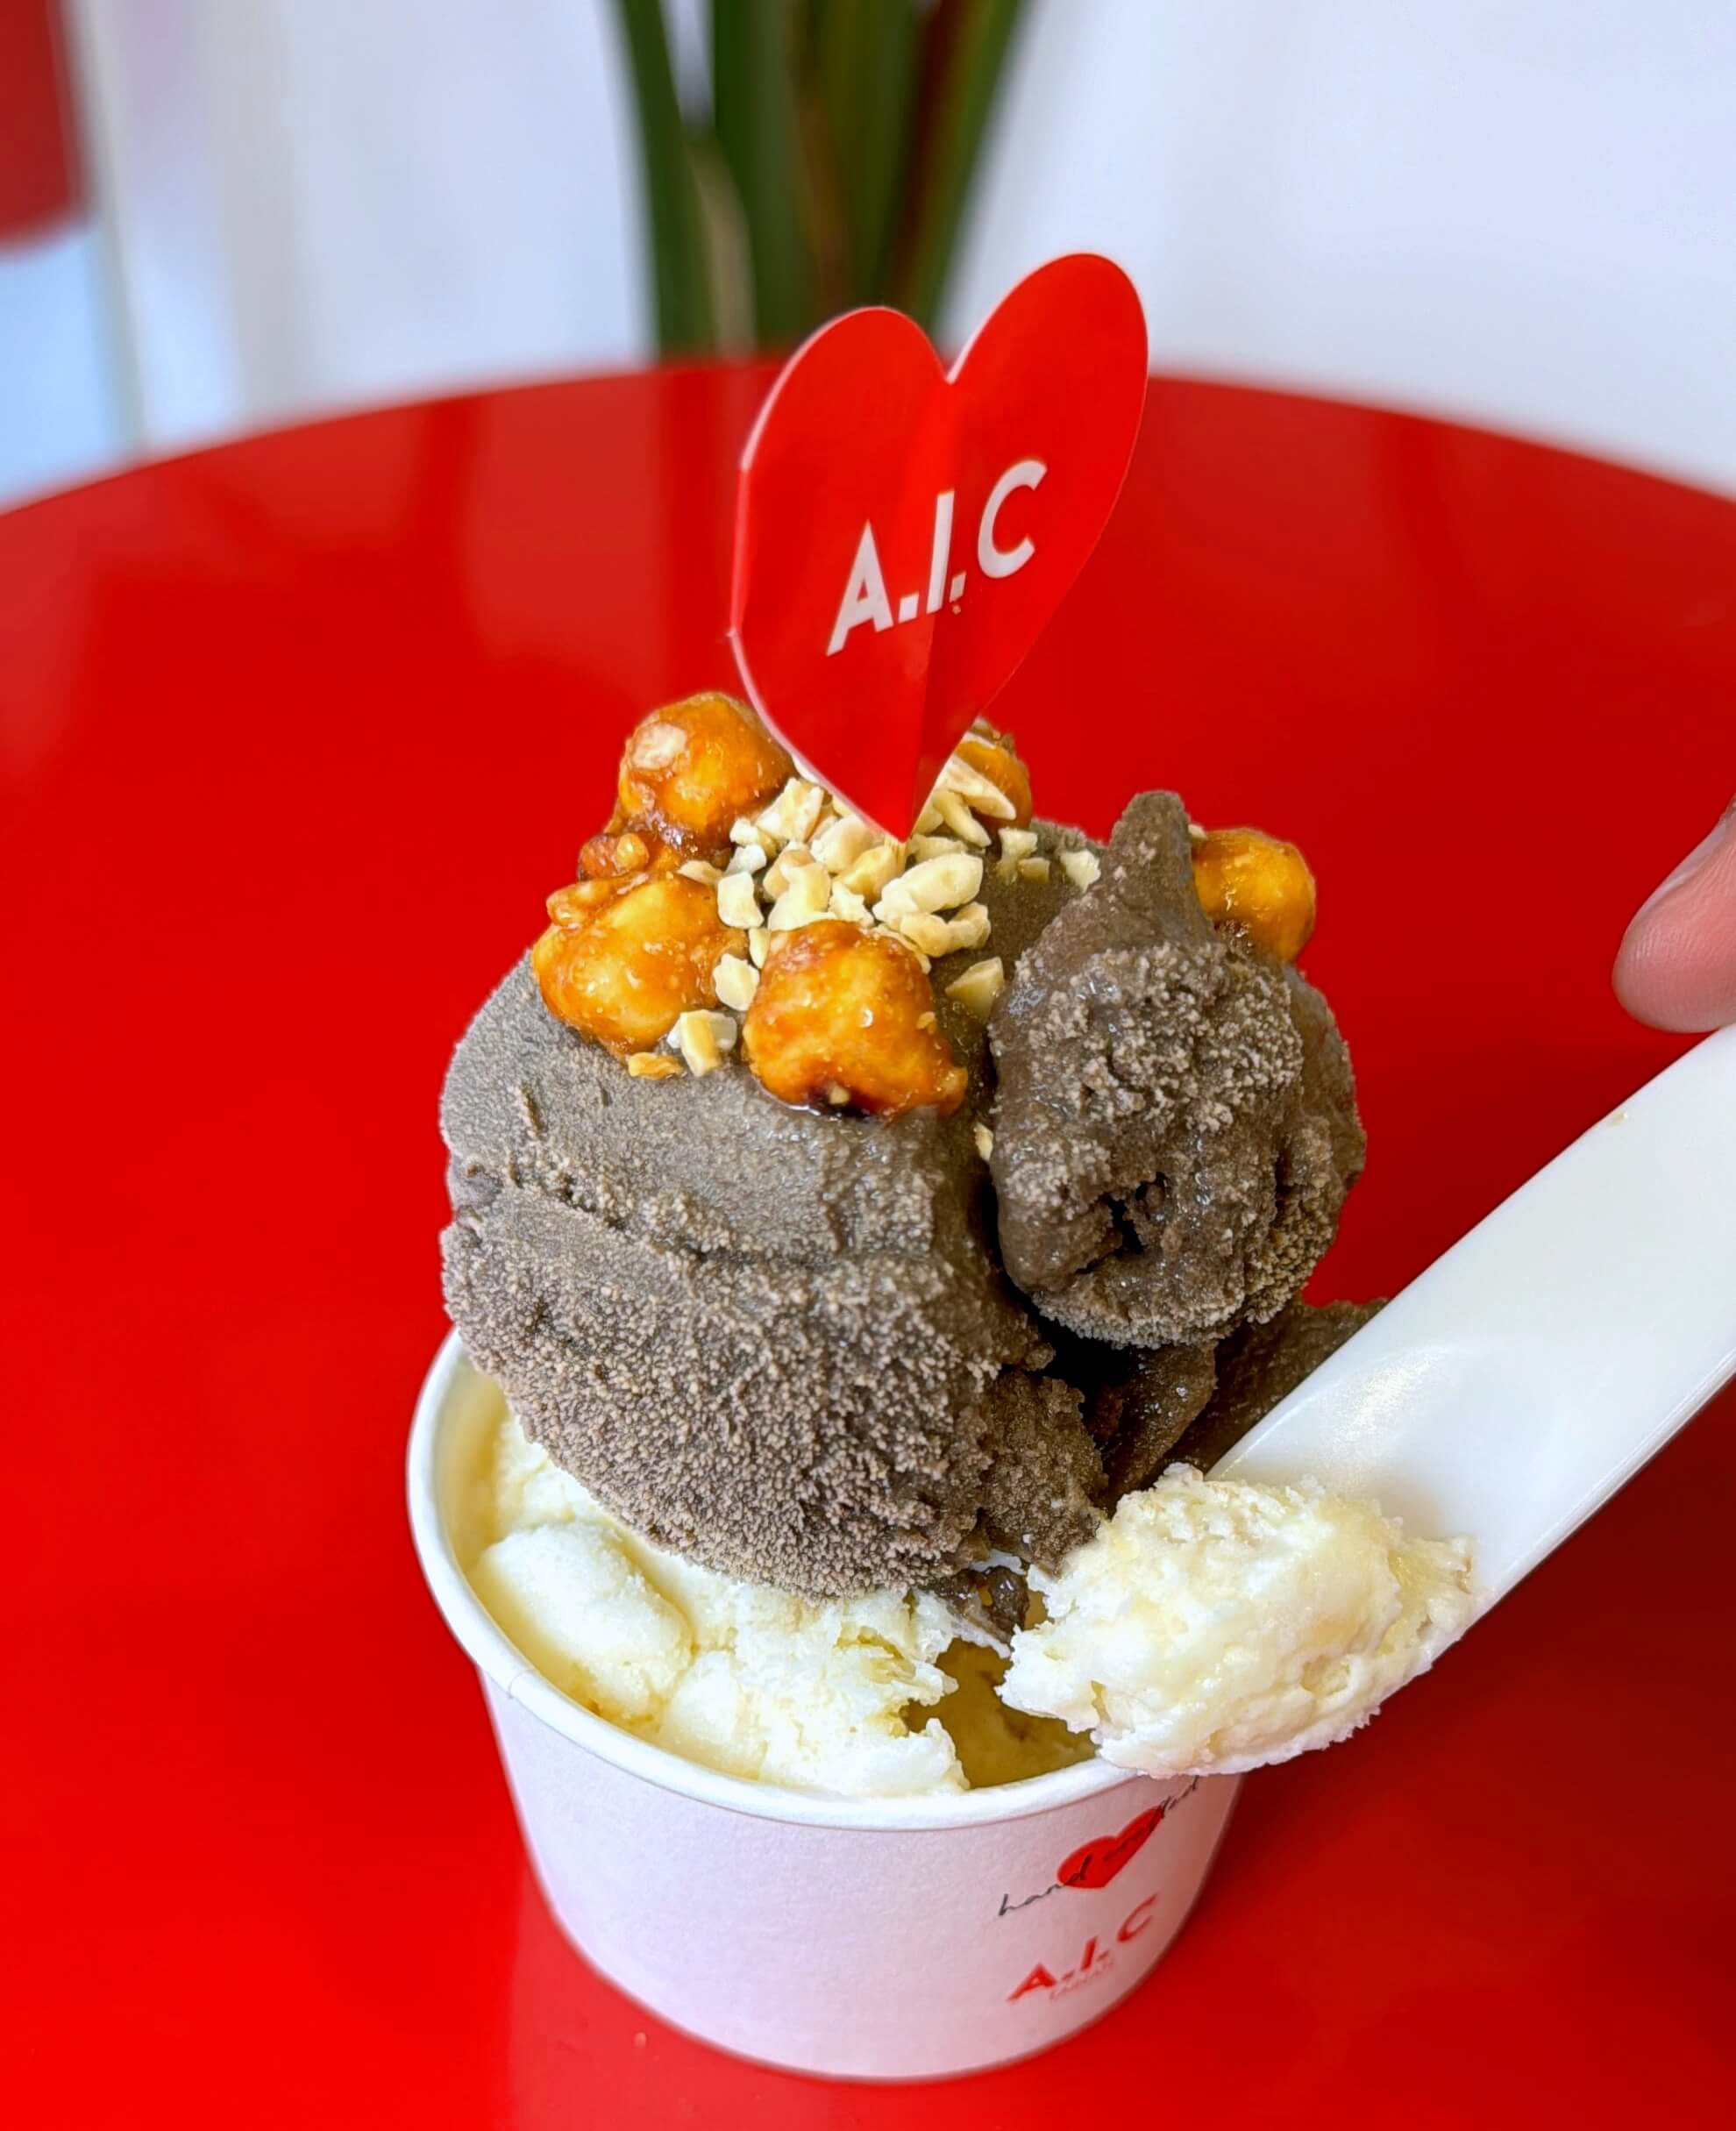 AIC 冰淇淋